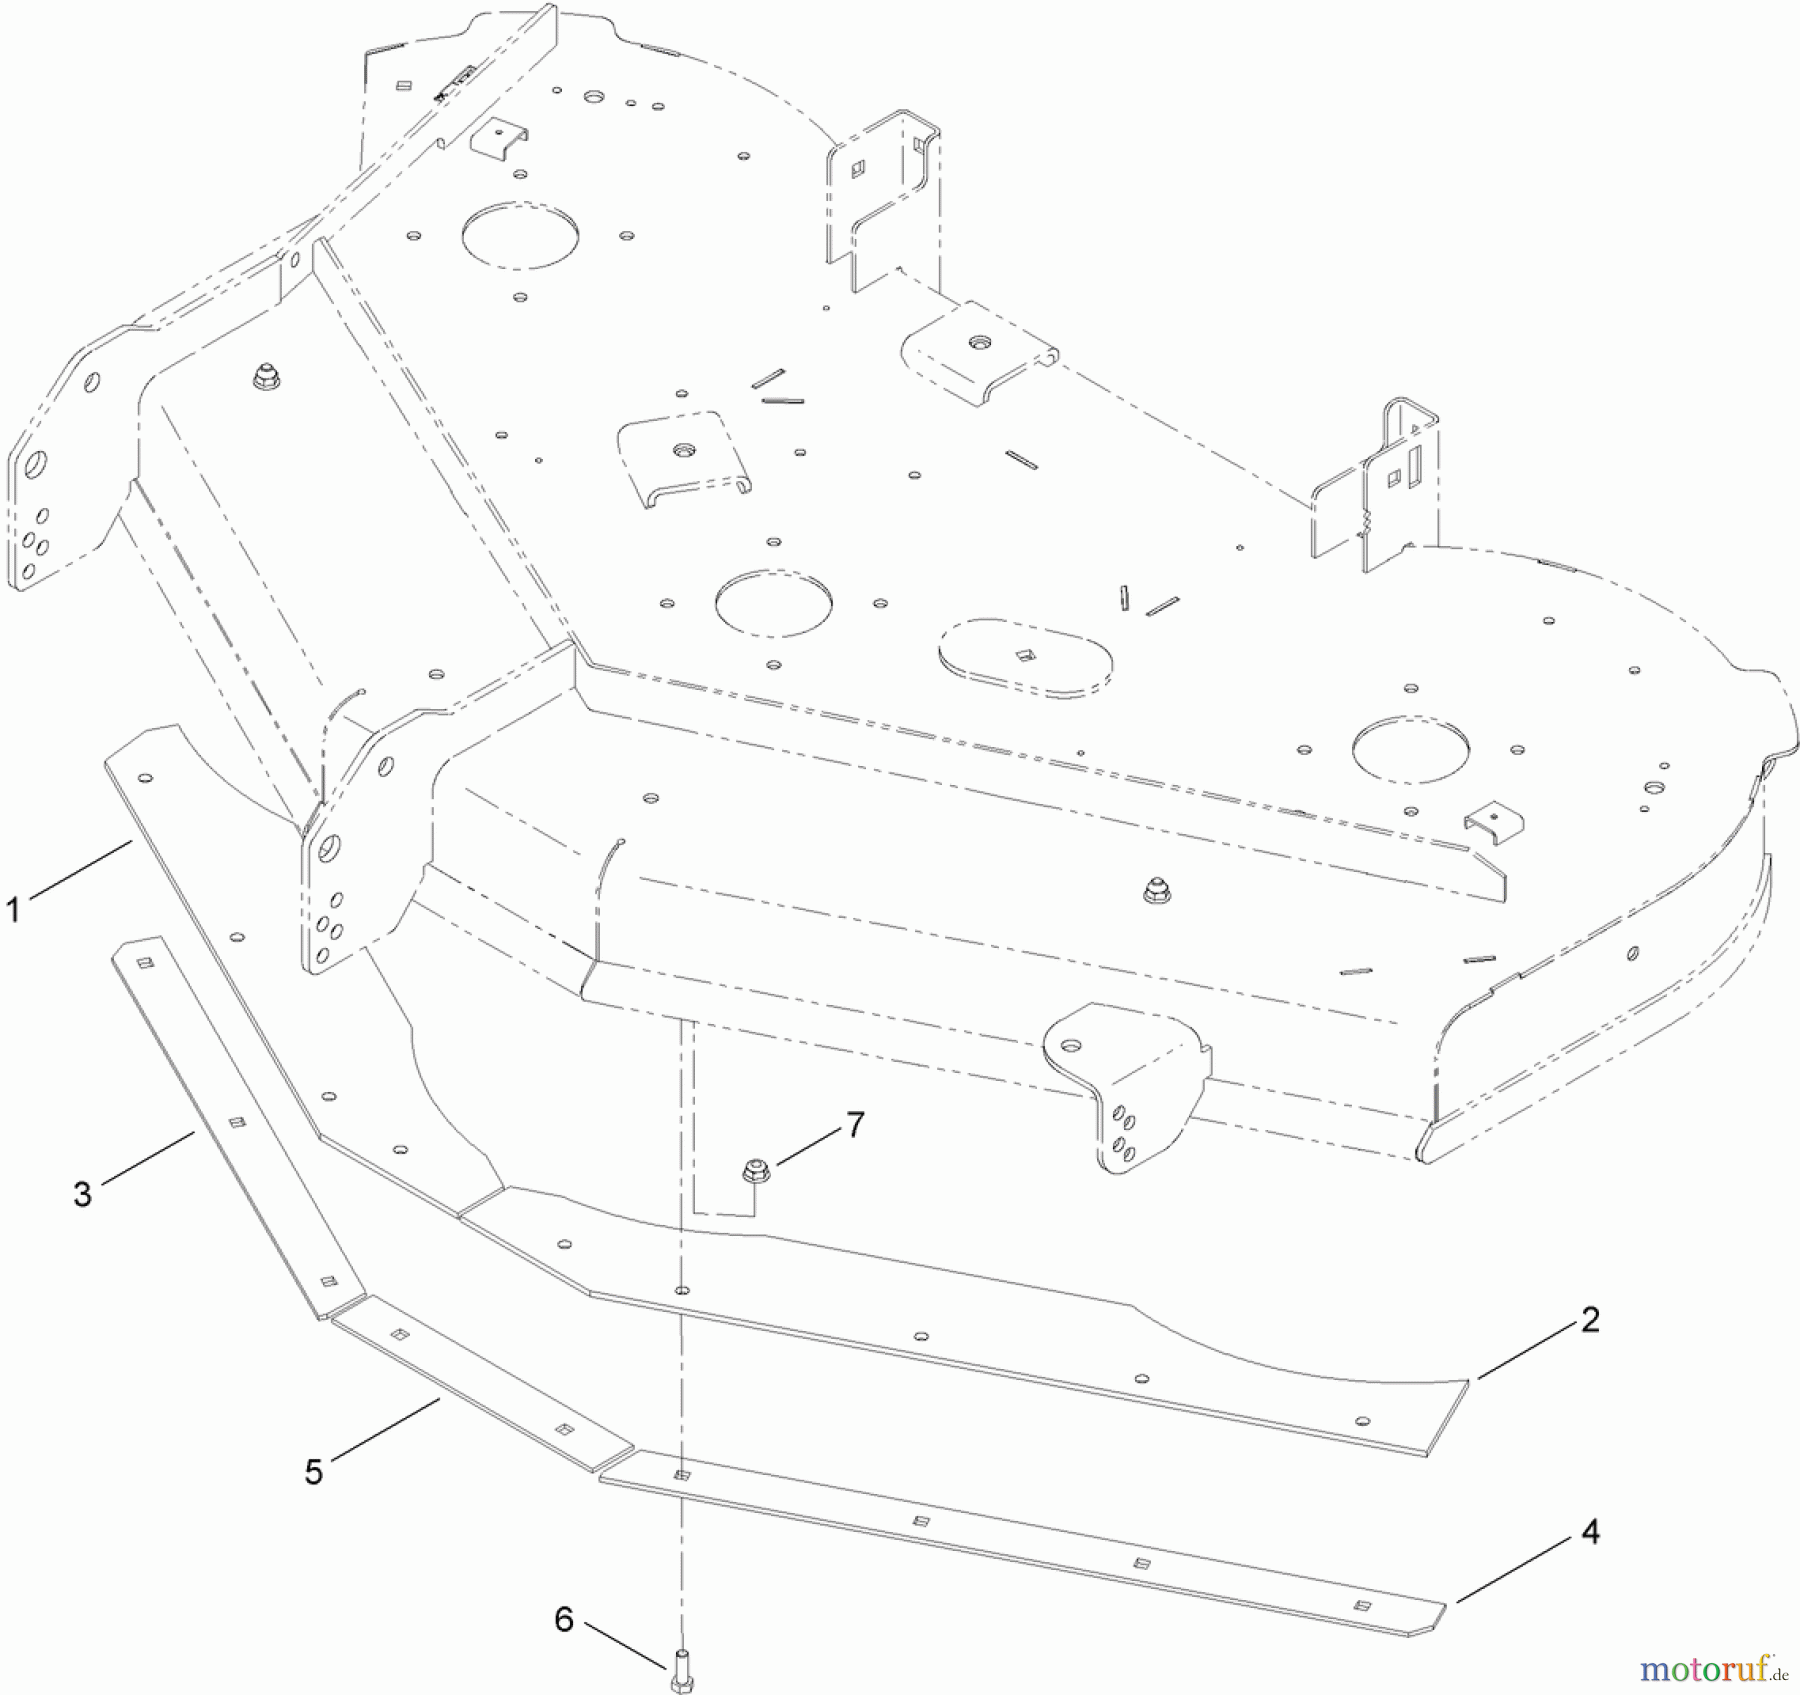  Toro Neu Accessories, Mower 121-5692 - Toro Bagging Enhancement Kit, Zero-Turn-Radius Riding Mower with 50